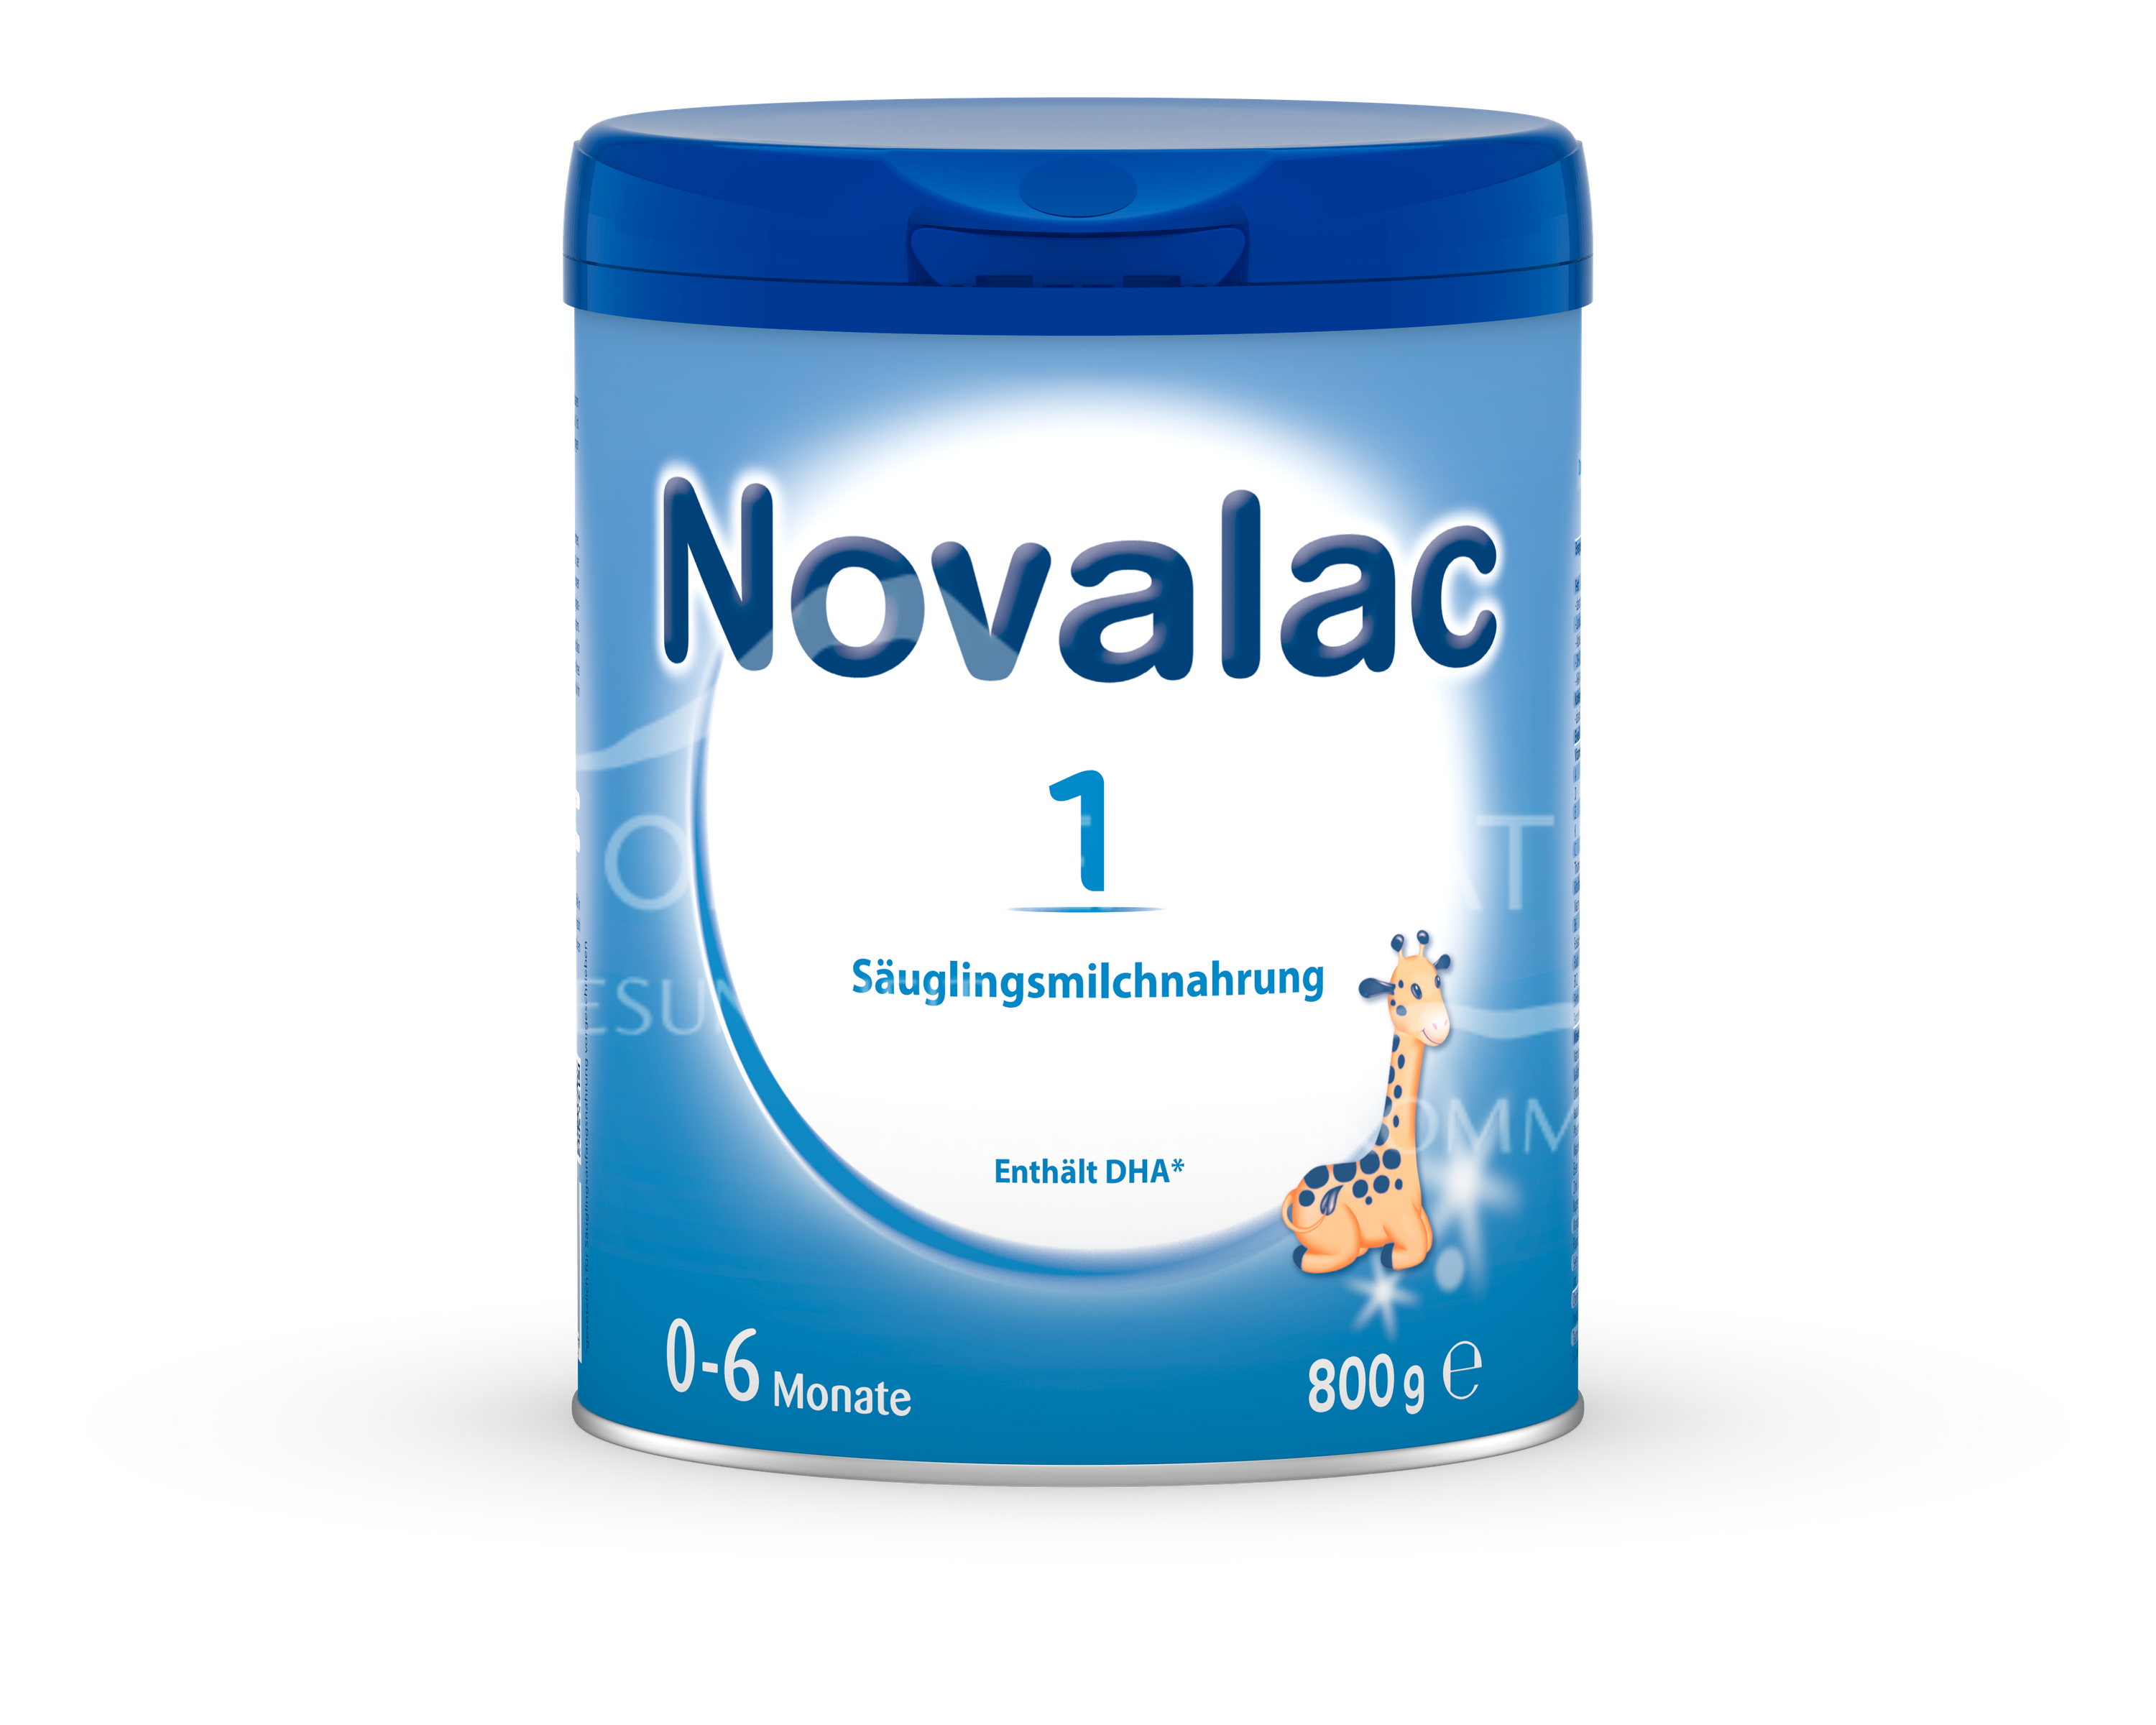 Novalac 1 Universelle Milchnahrung